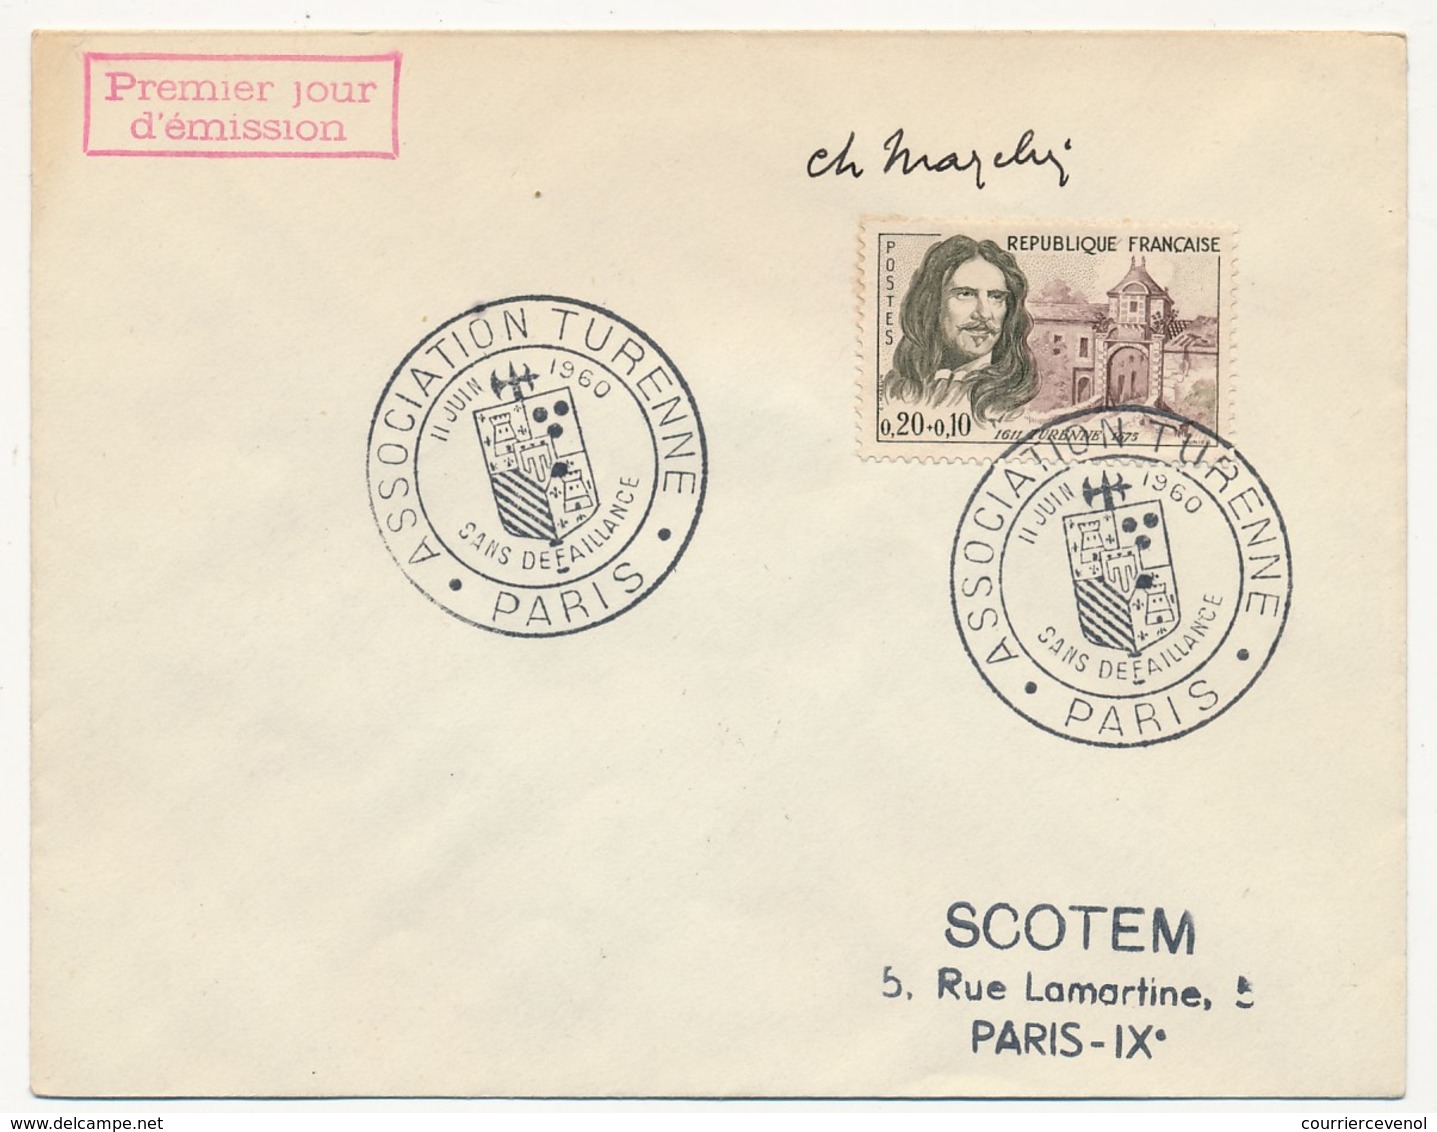 Enveloppe Scotem - 0,20 + 0,10 TURENNE Obl. Cachet Illustré Association Turenne Paris 1961 Signature MAZELIN - Lettres & Documents